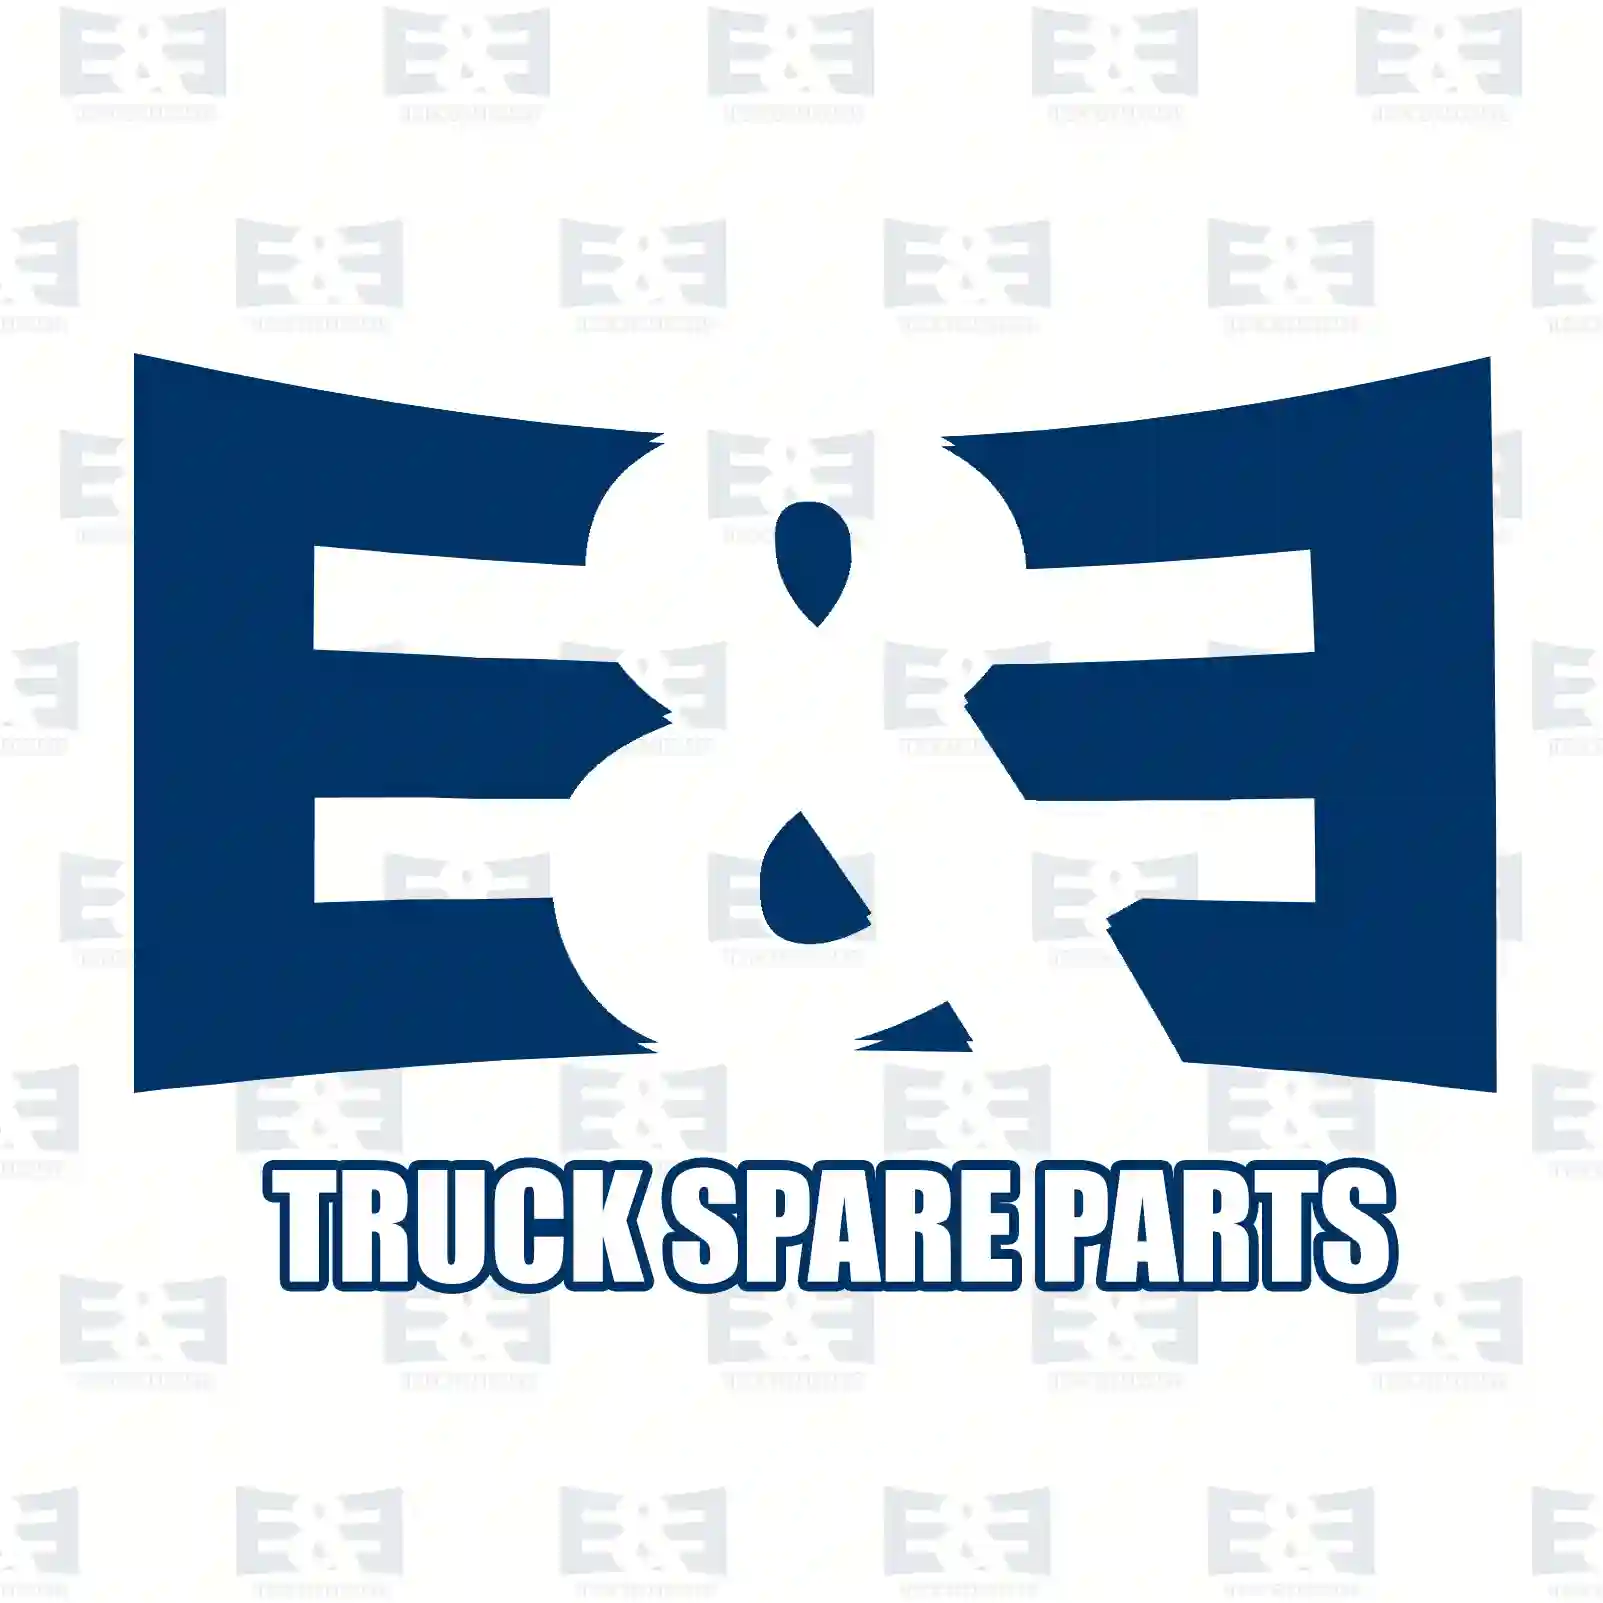 Boot, 2E2207367, #YOK ||  2E2207367 E&E Truck Spare Parts | Truck Spare Parts, Auotomotive Spare Parts Boot, 2E2207367, #YOK ||  2E2207367 E&E Truck Spare Parts | Truck Spare Parts, Auotomotive Spare Parts